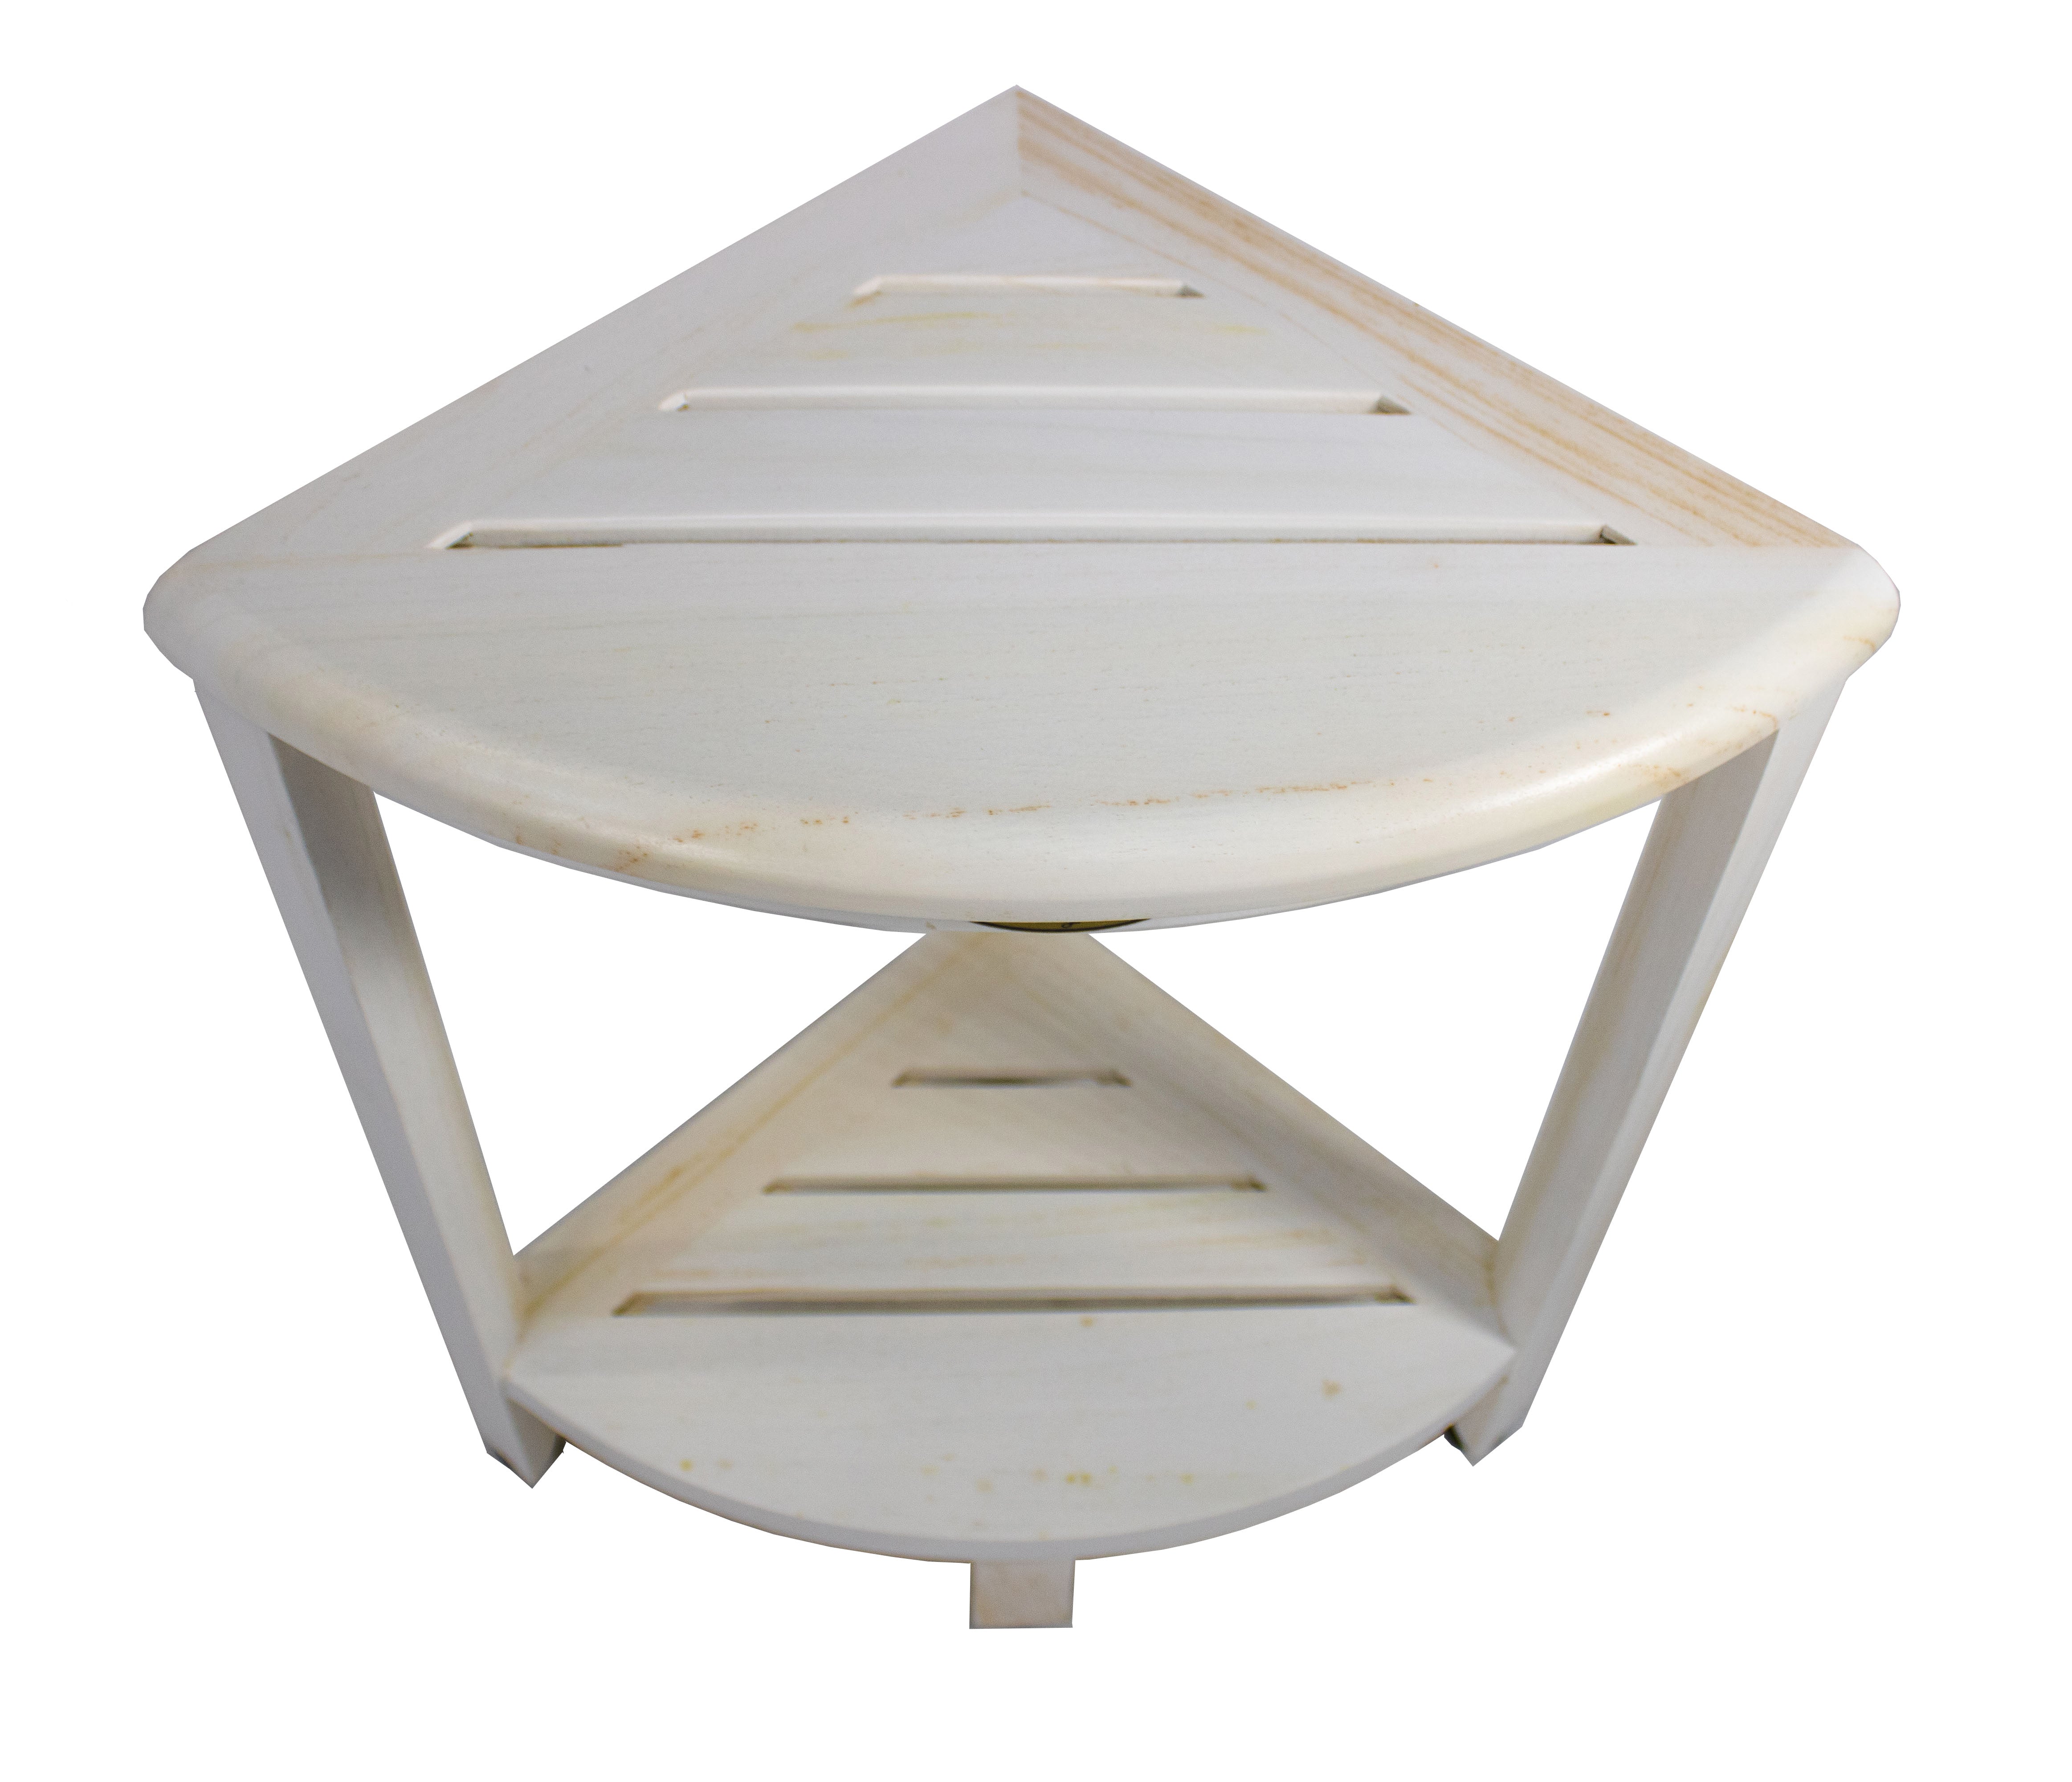 CoastalVogue® SnazzyCorner® 18" Teak Wood Corner Shower Bench with Shelf in Coastal Driftwood Finish